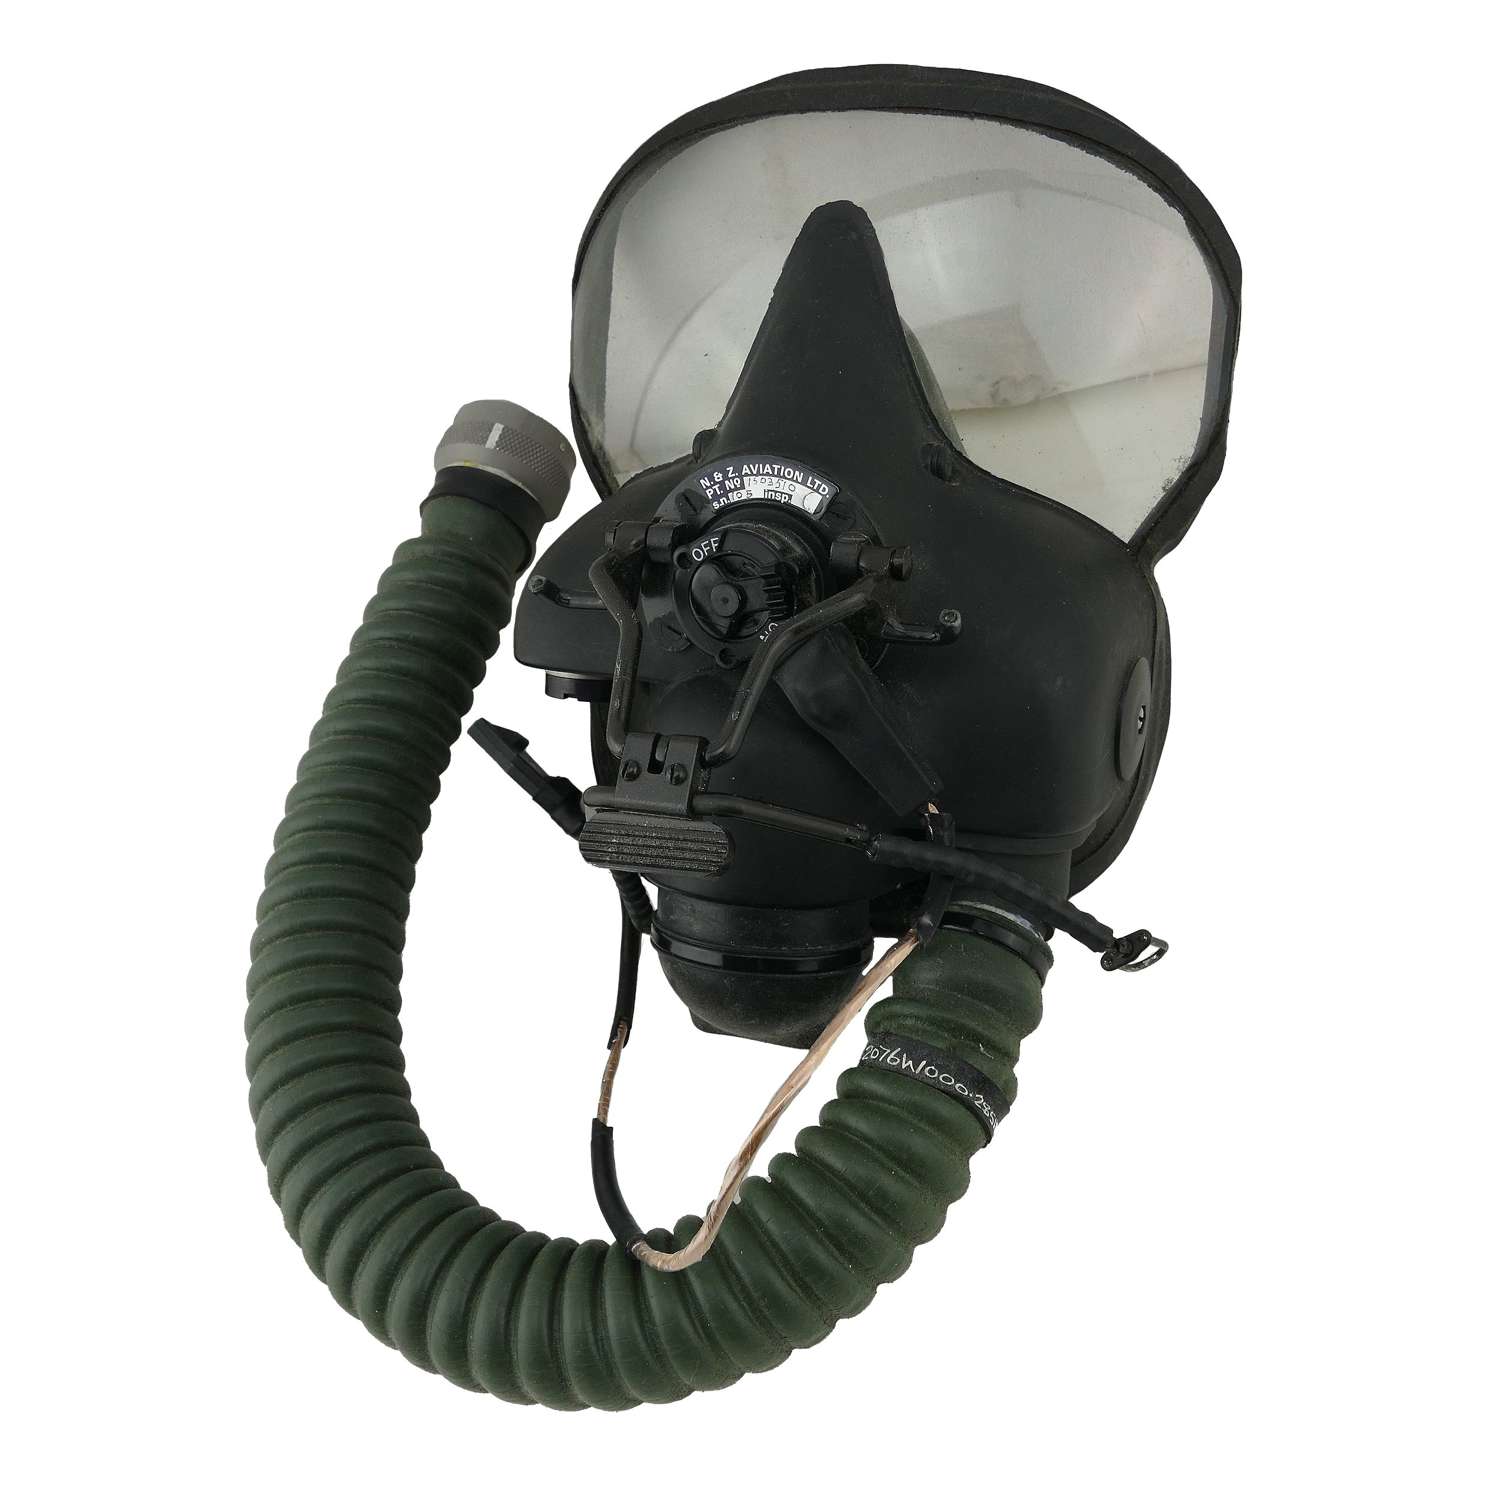 RAF NBC oxygen mask